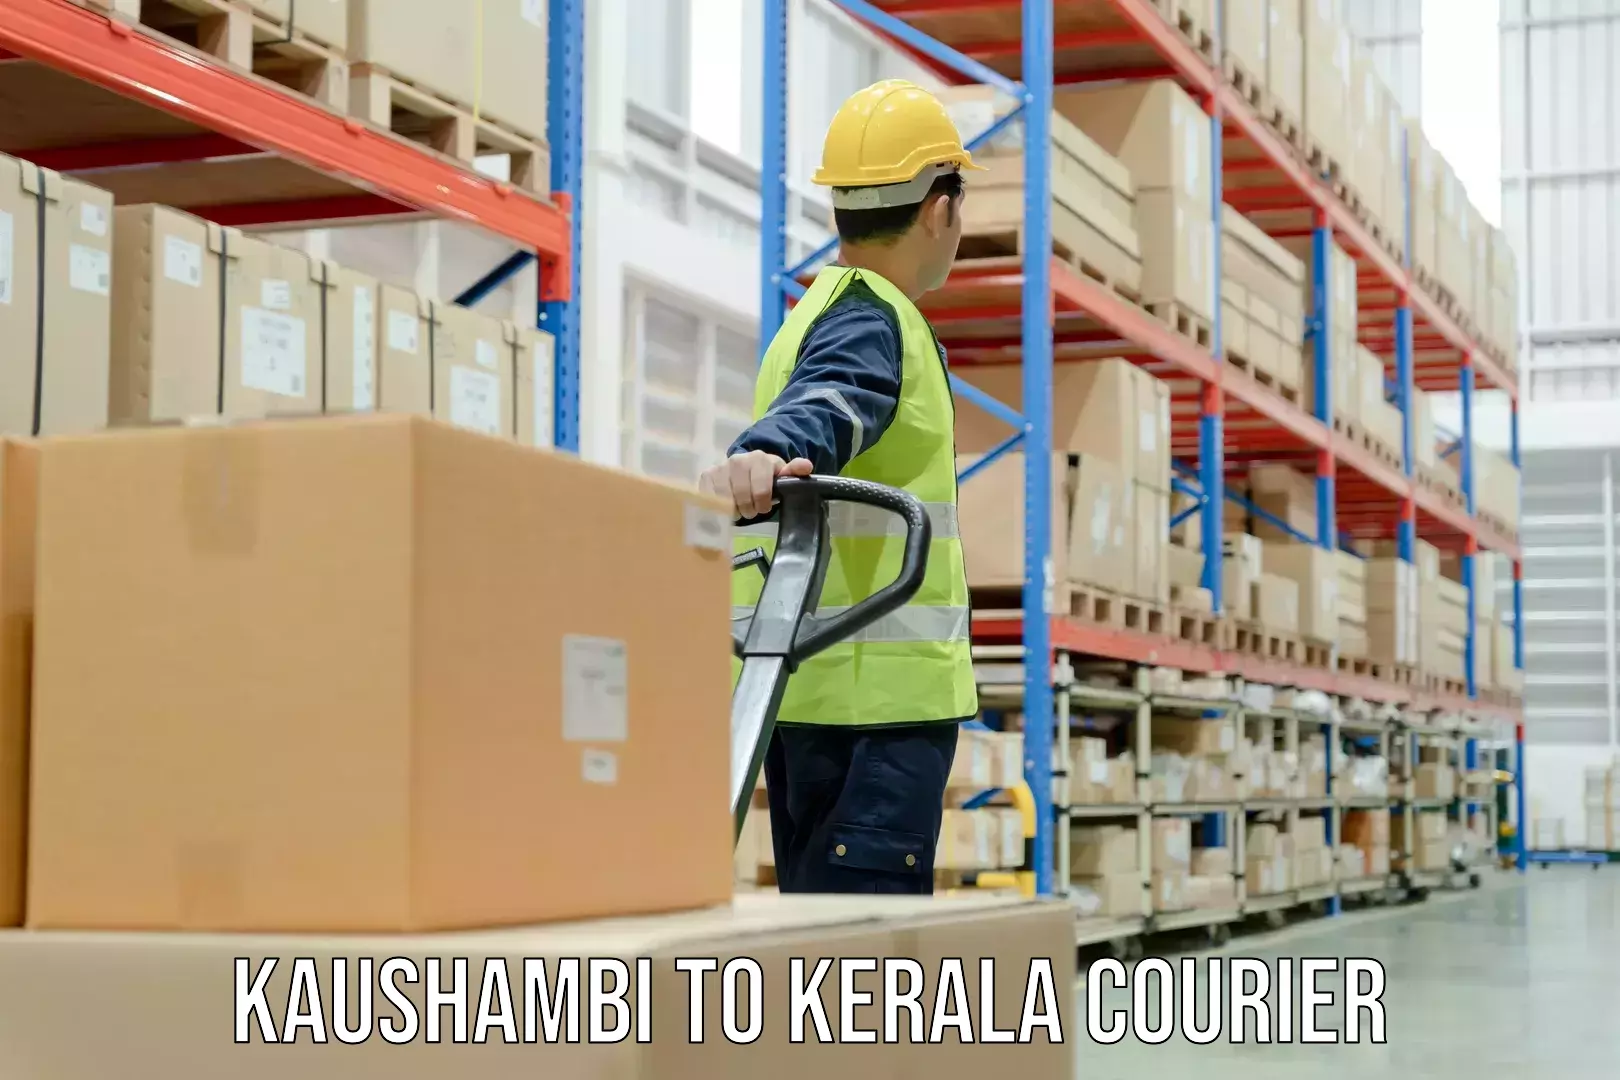 Automated parcel services Kaushambi to Manjeshwar